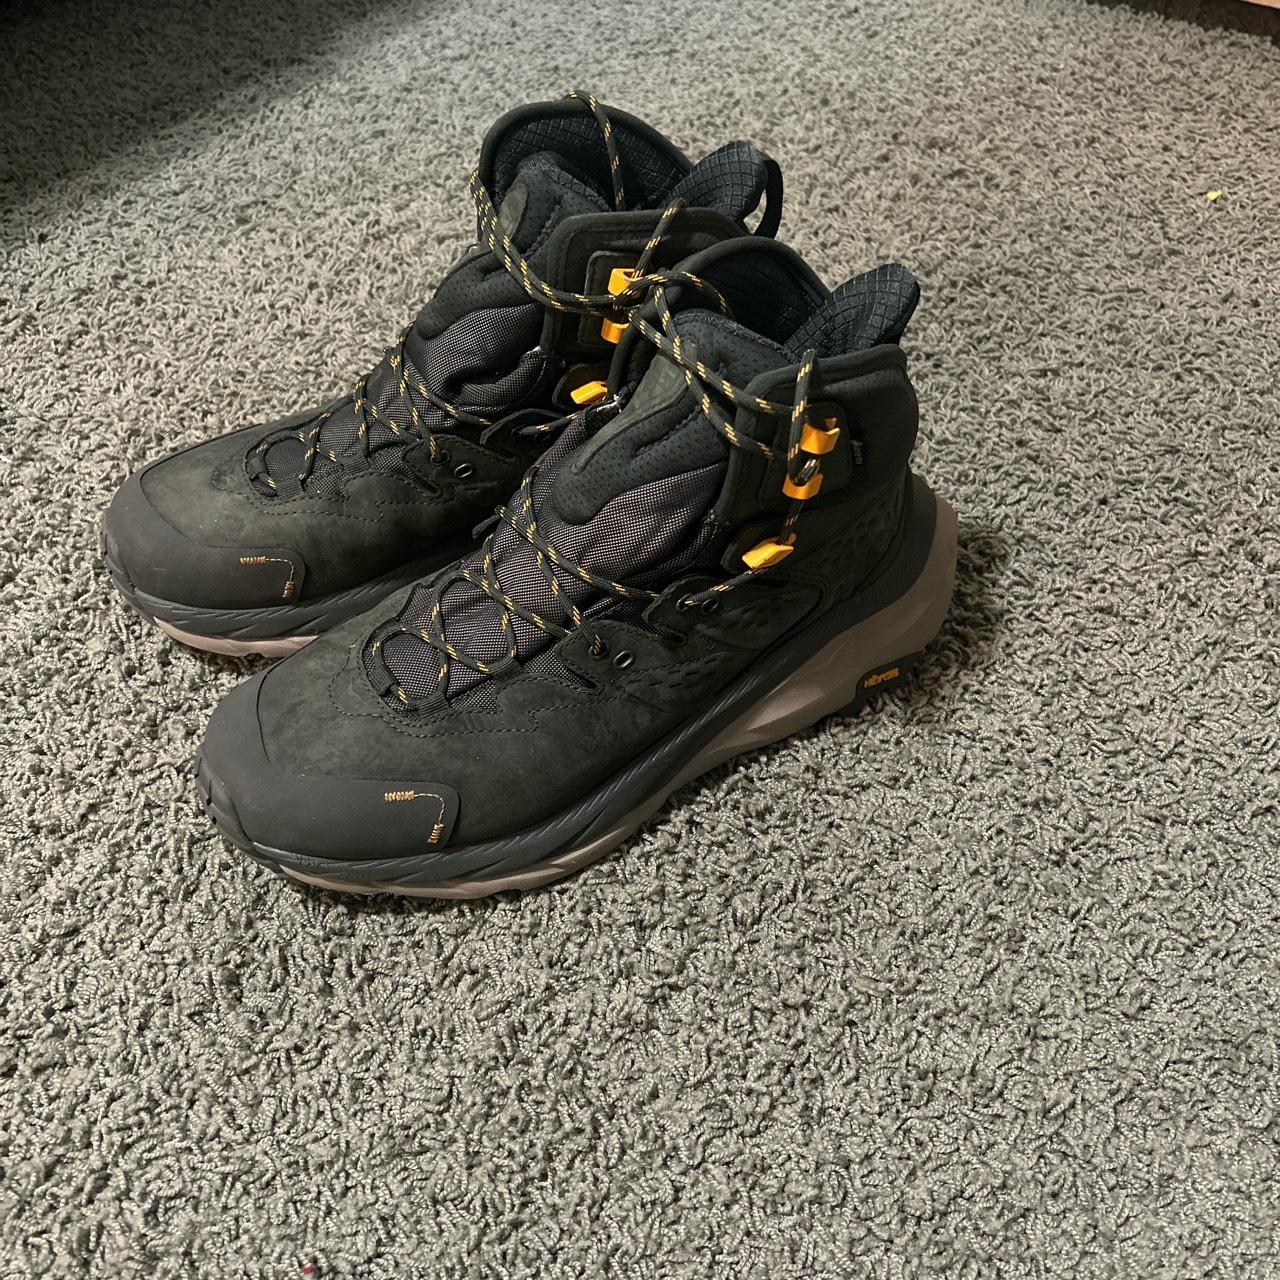 Hoka Kaha 2 hiking boots. Mens size 11 worn once - Depop